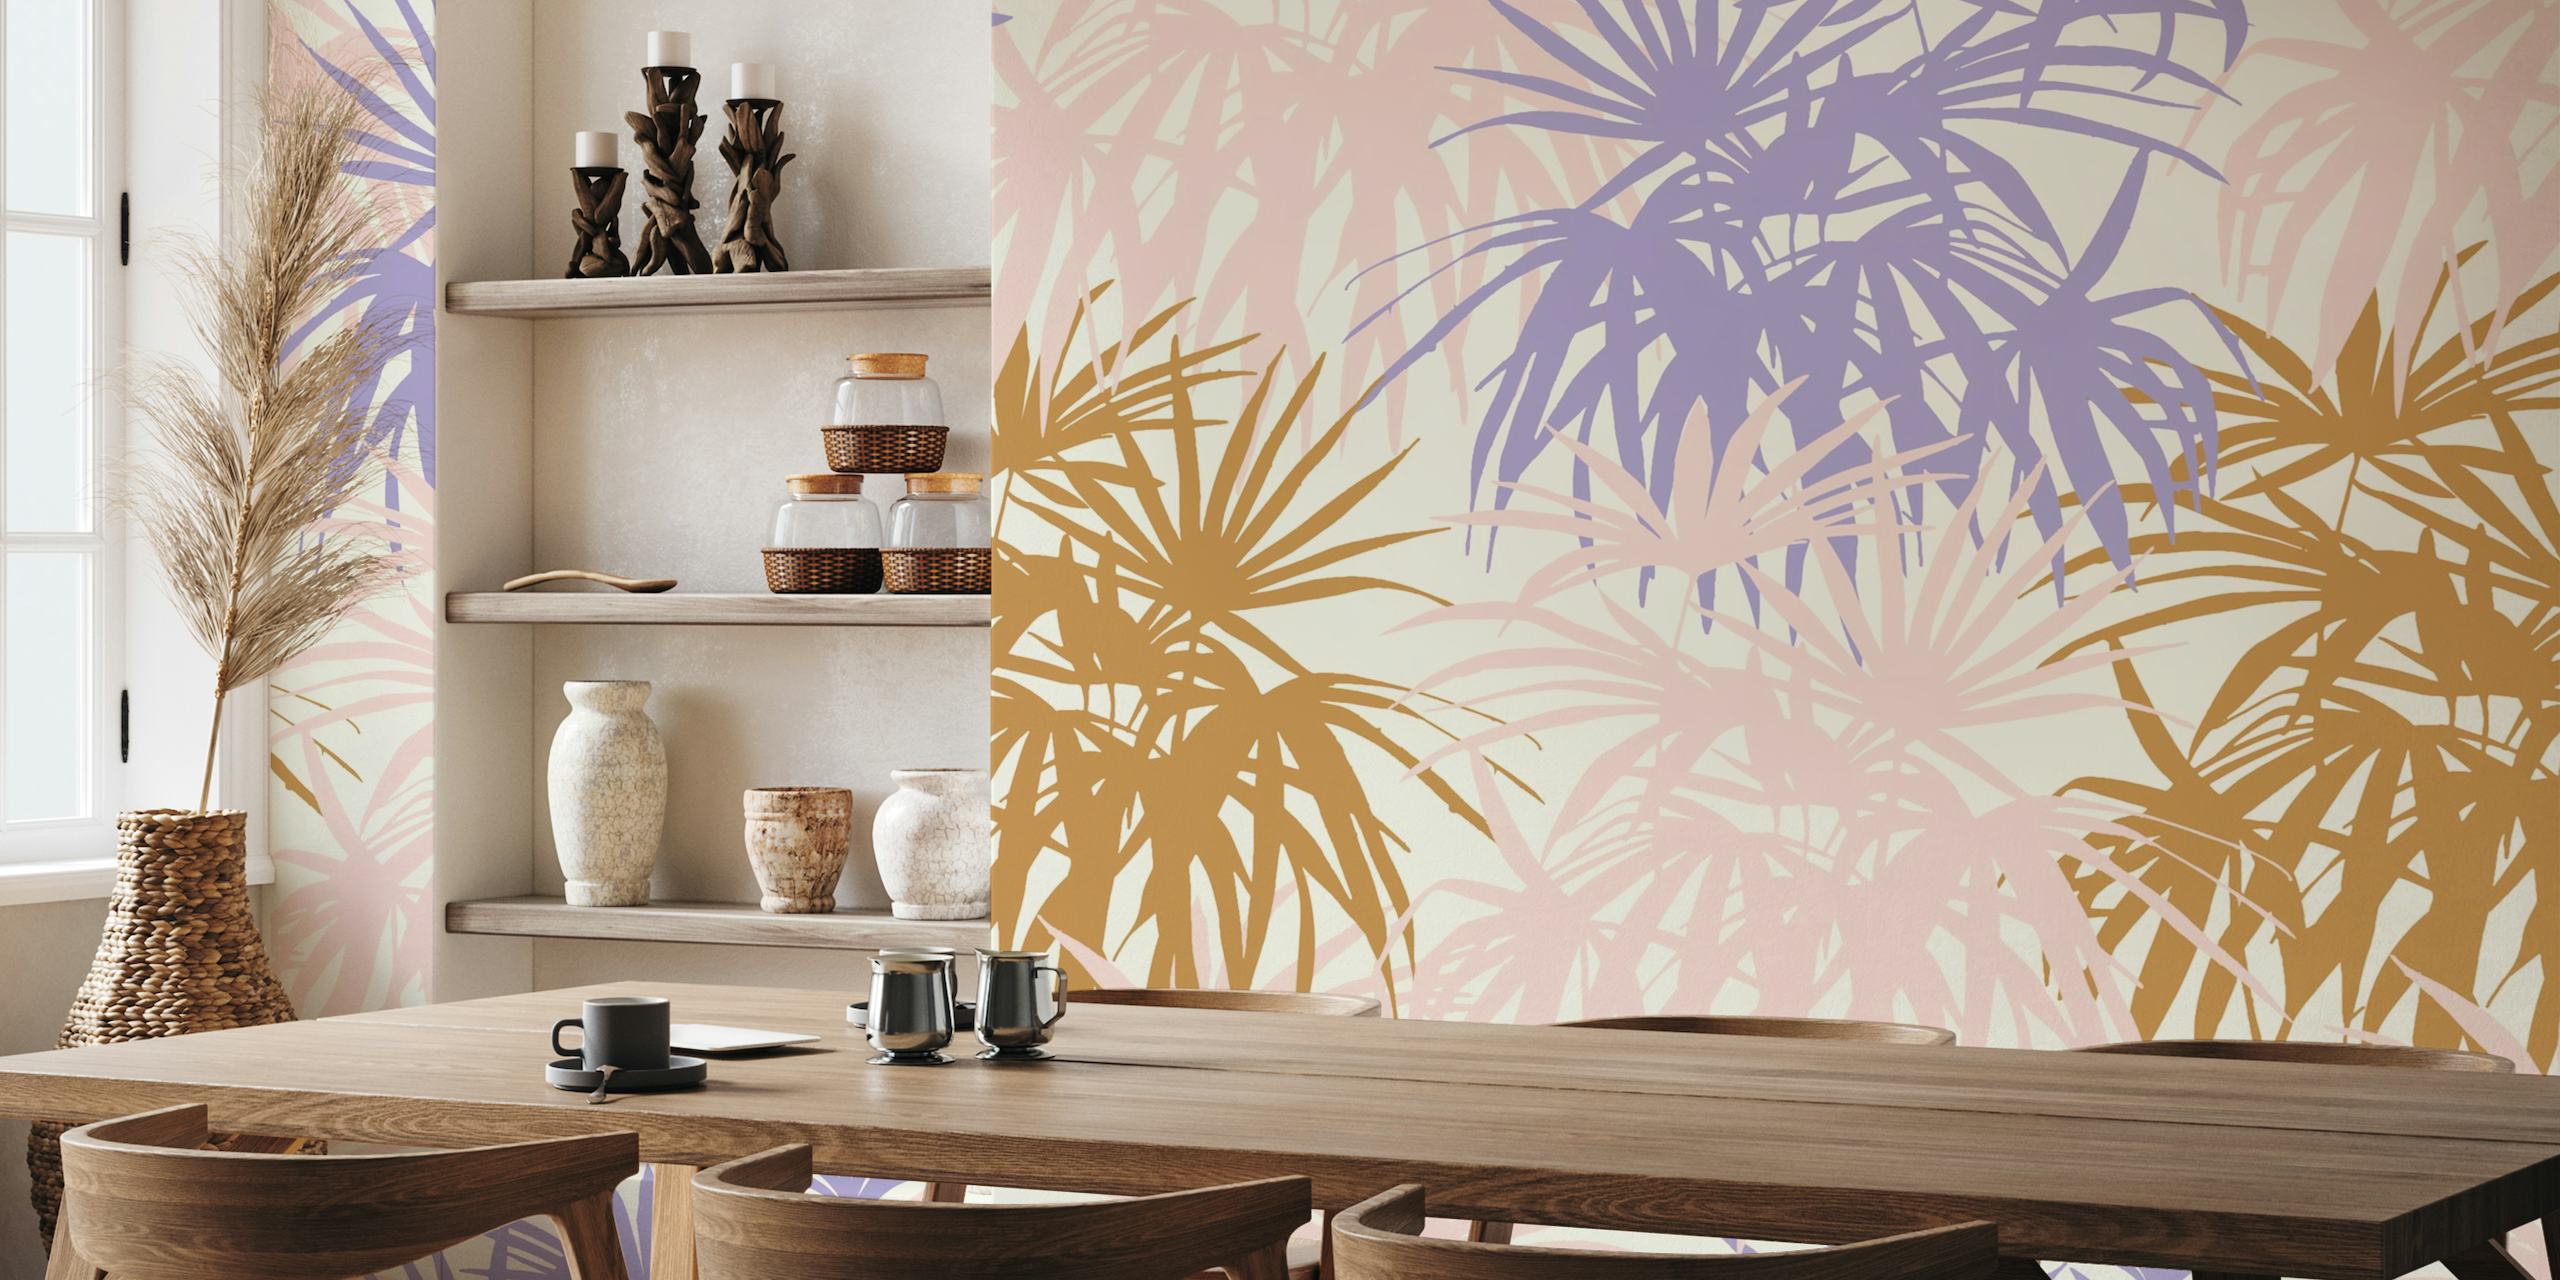 Breezy Desert - Palmfrond boho chic wallpaper